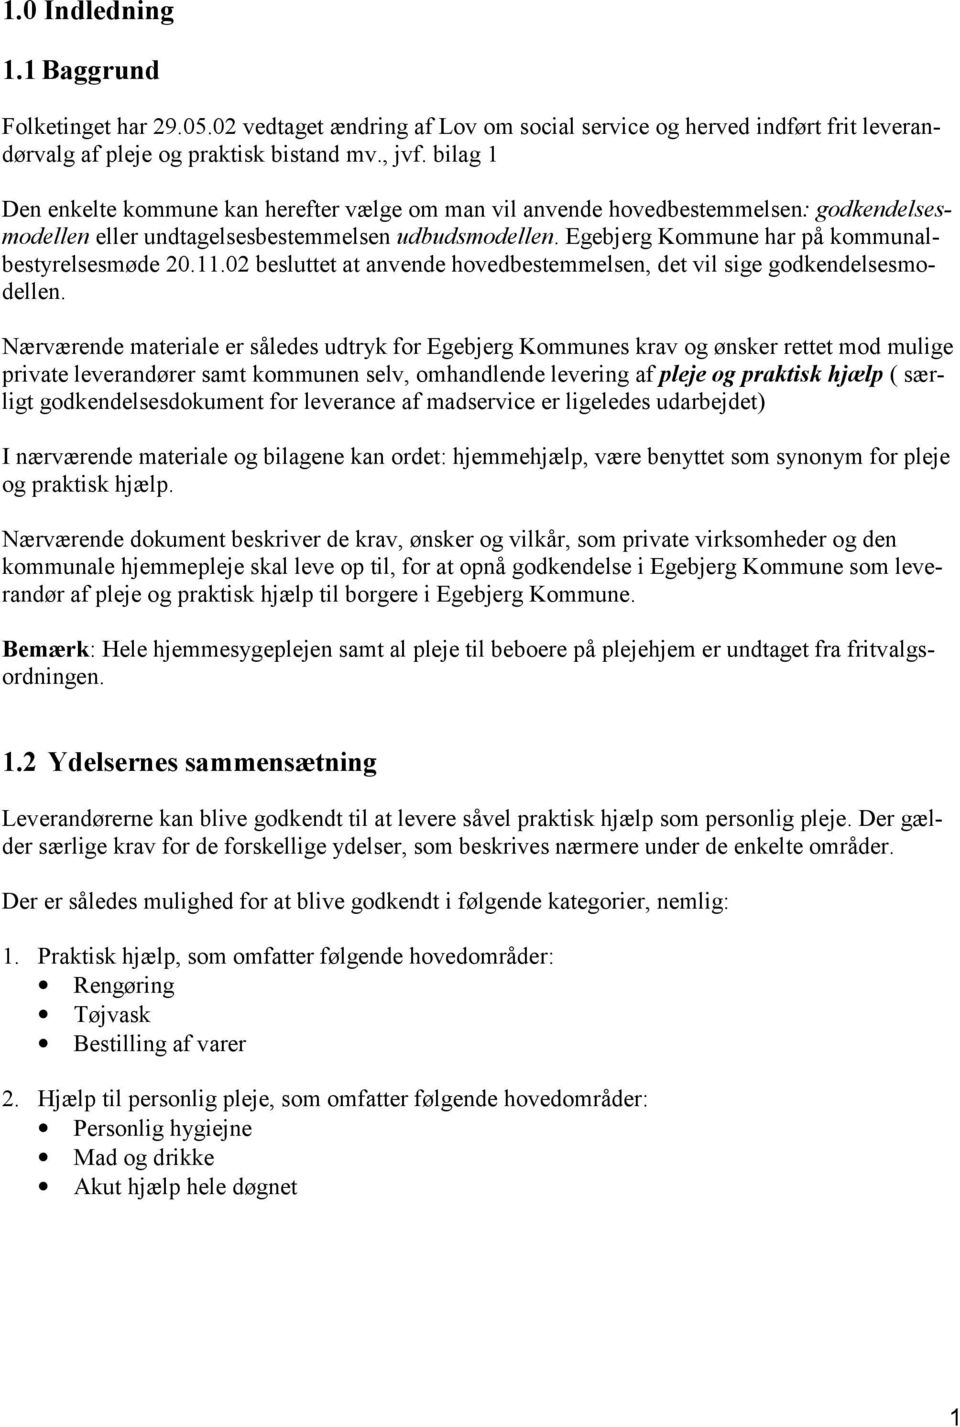 Egebjerg Kommune har på kommunalbestyrelsesmøde 20.11.02 besluttet at anvende hovedbestemmelsen, det vil sige godkendelsesmodellen.